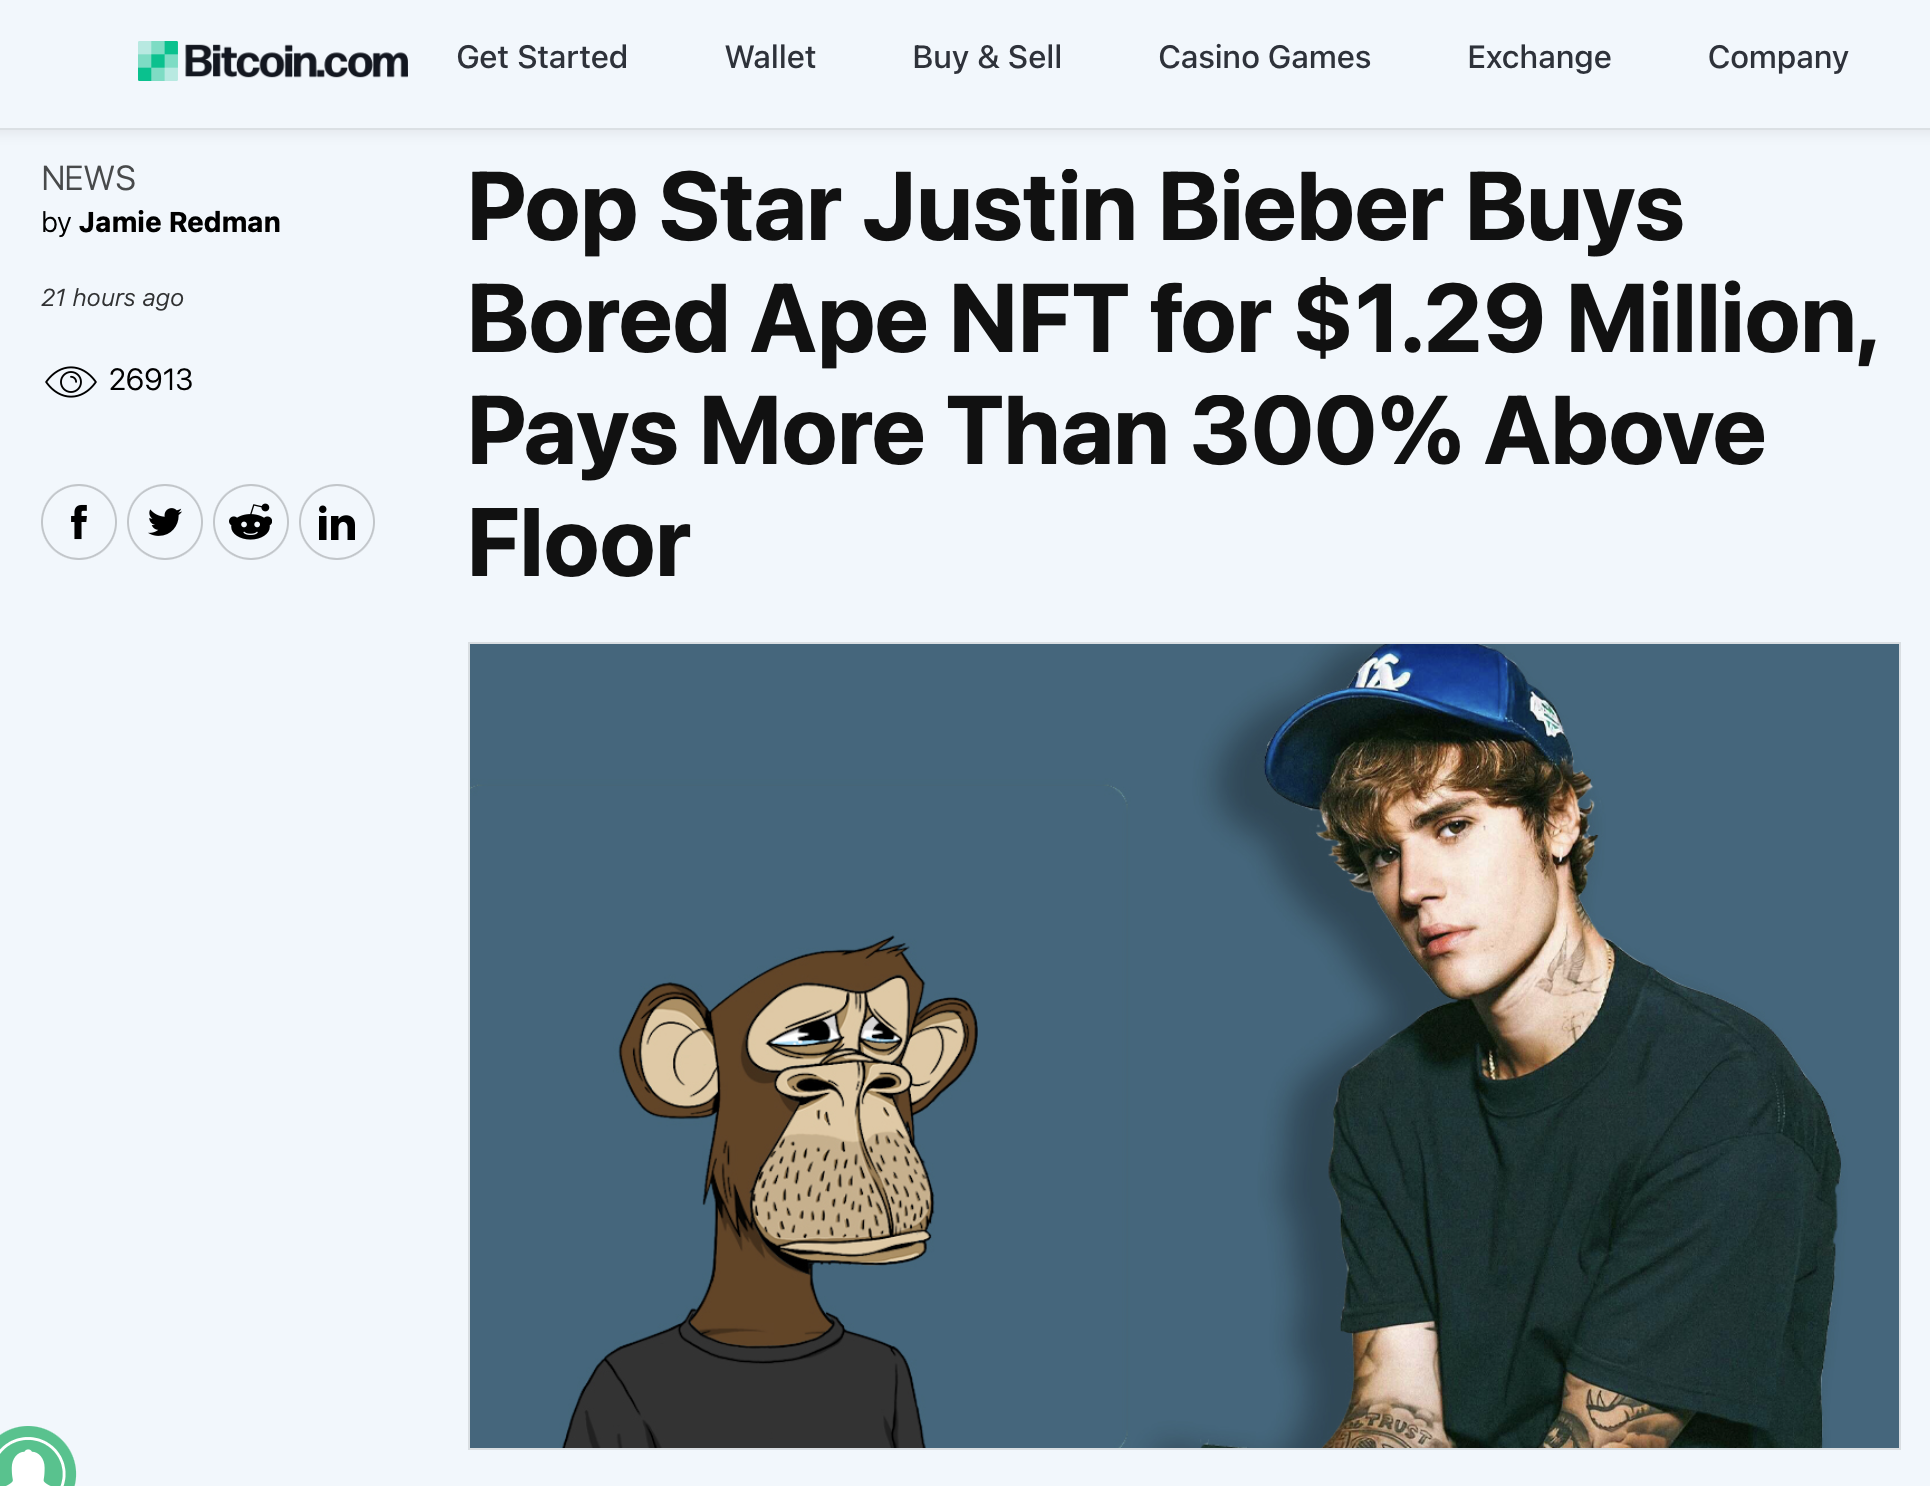 Justin Bieber informó haber comprado un NFT de Bored Ape, pero ¿es esto cierto?